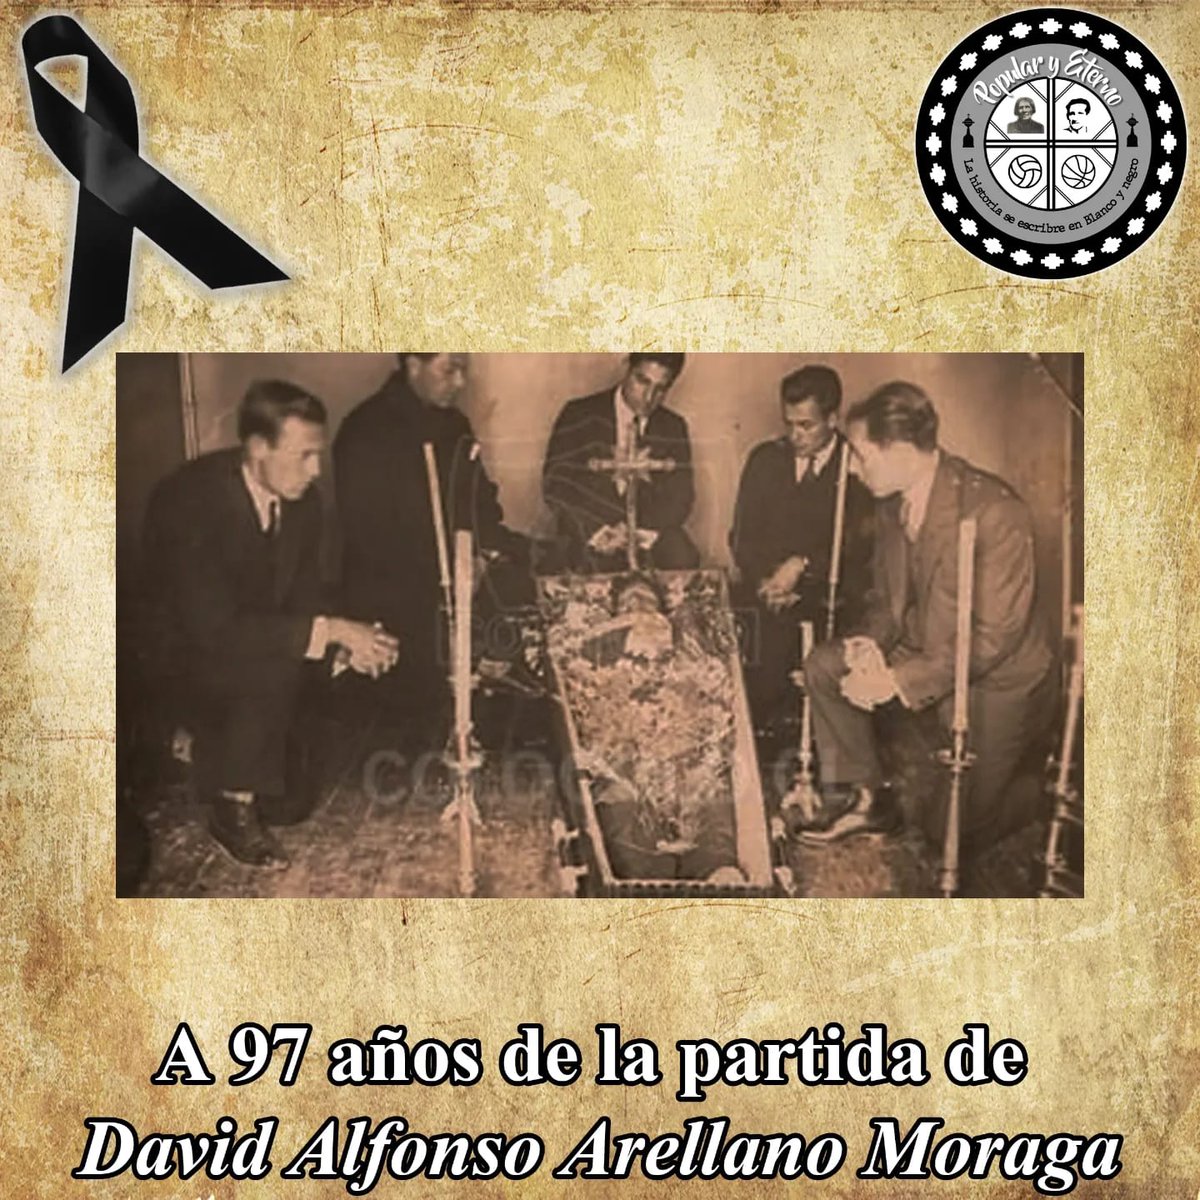 Su trágica muerte durante un partido en Valladolid (España) conmocionó al país y al mundo del fútbol. Aunque su partida fue prematura, su legado perdura en cada gol, en cada tribuna que lleva su nombre y en el corazón de los aficionados.